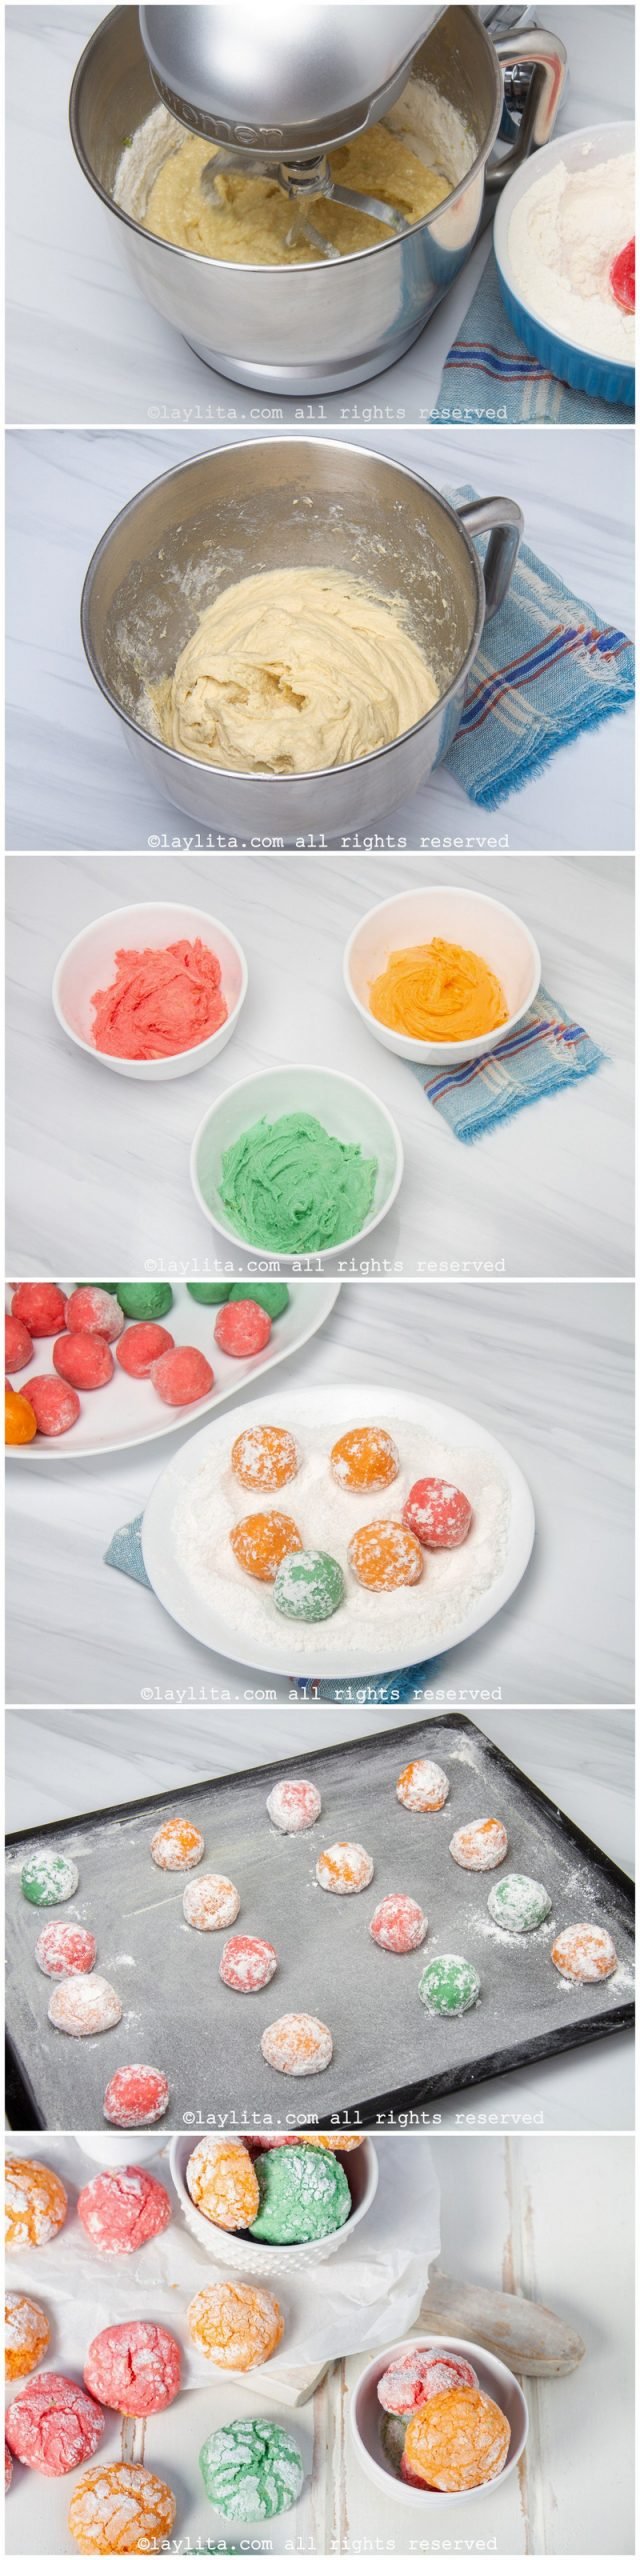 Fotos paso a paso para preparar galletas craqueladas de colores con sabor a limón